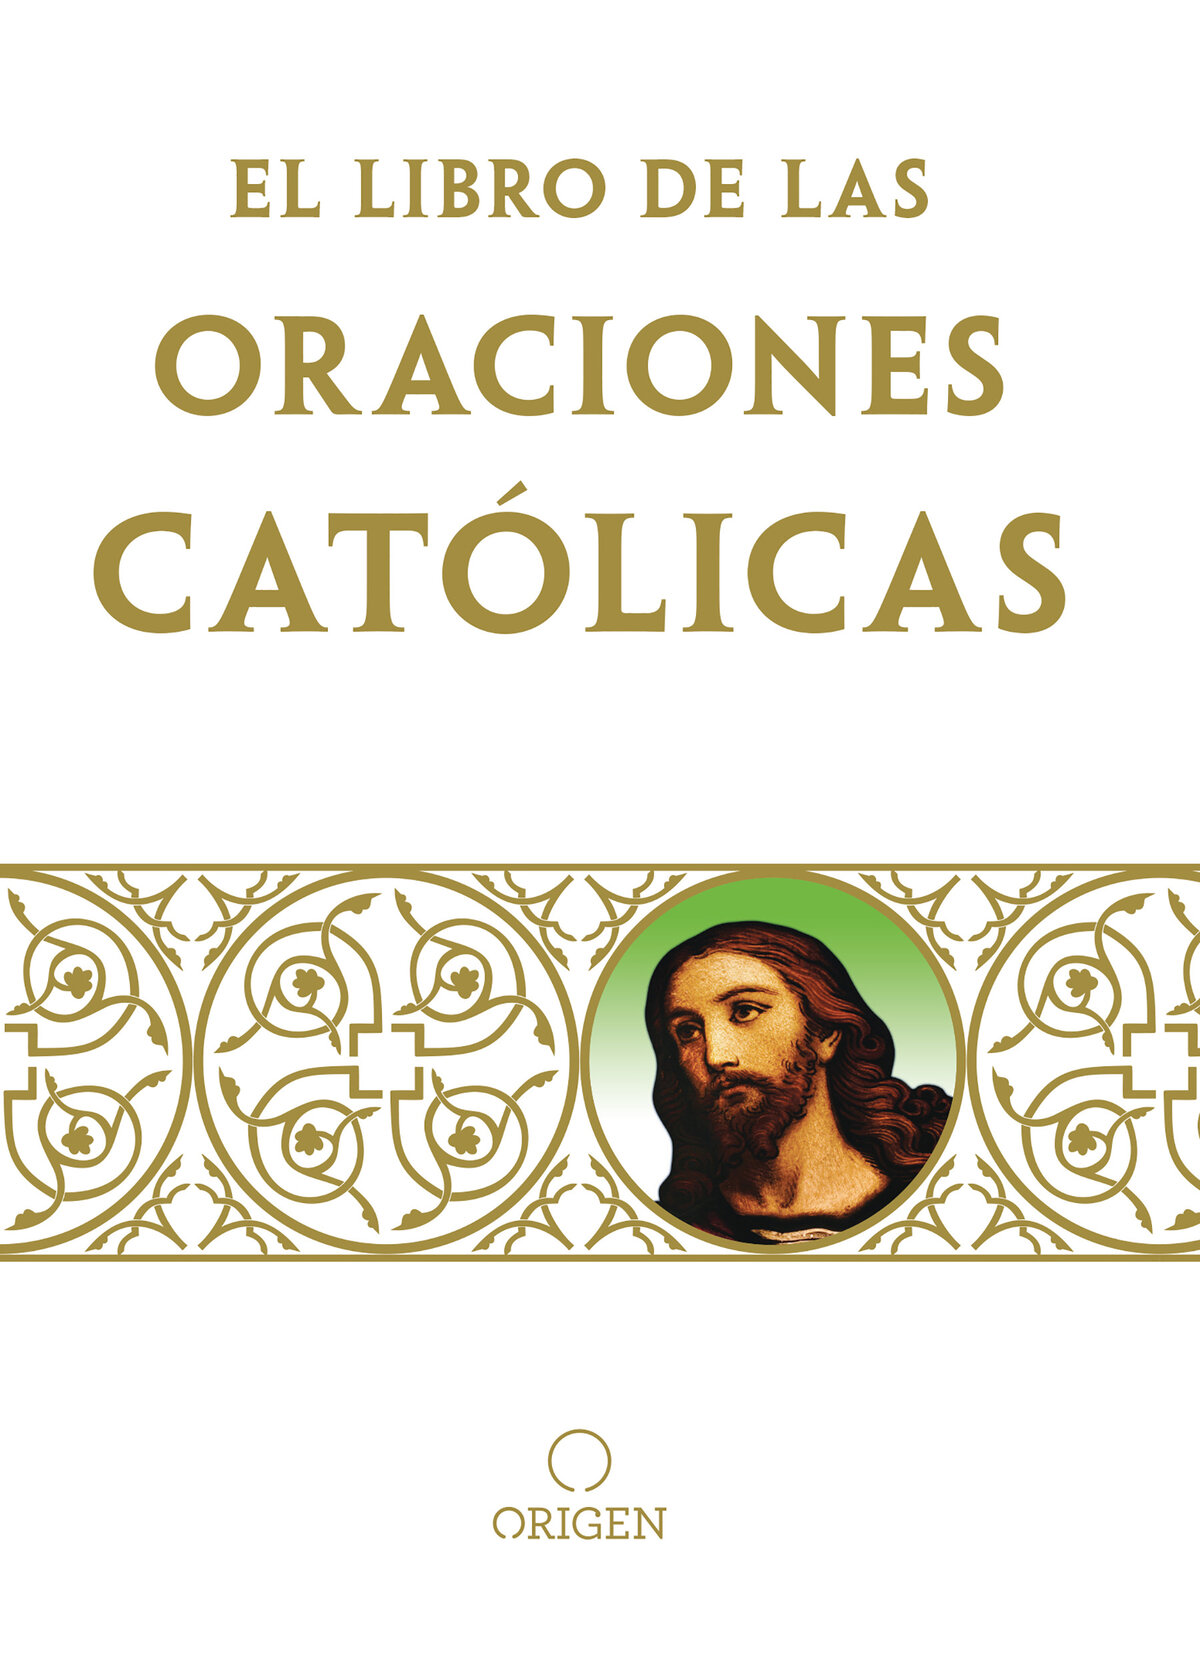 El libro de oraciones católicas - image 1